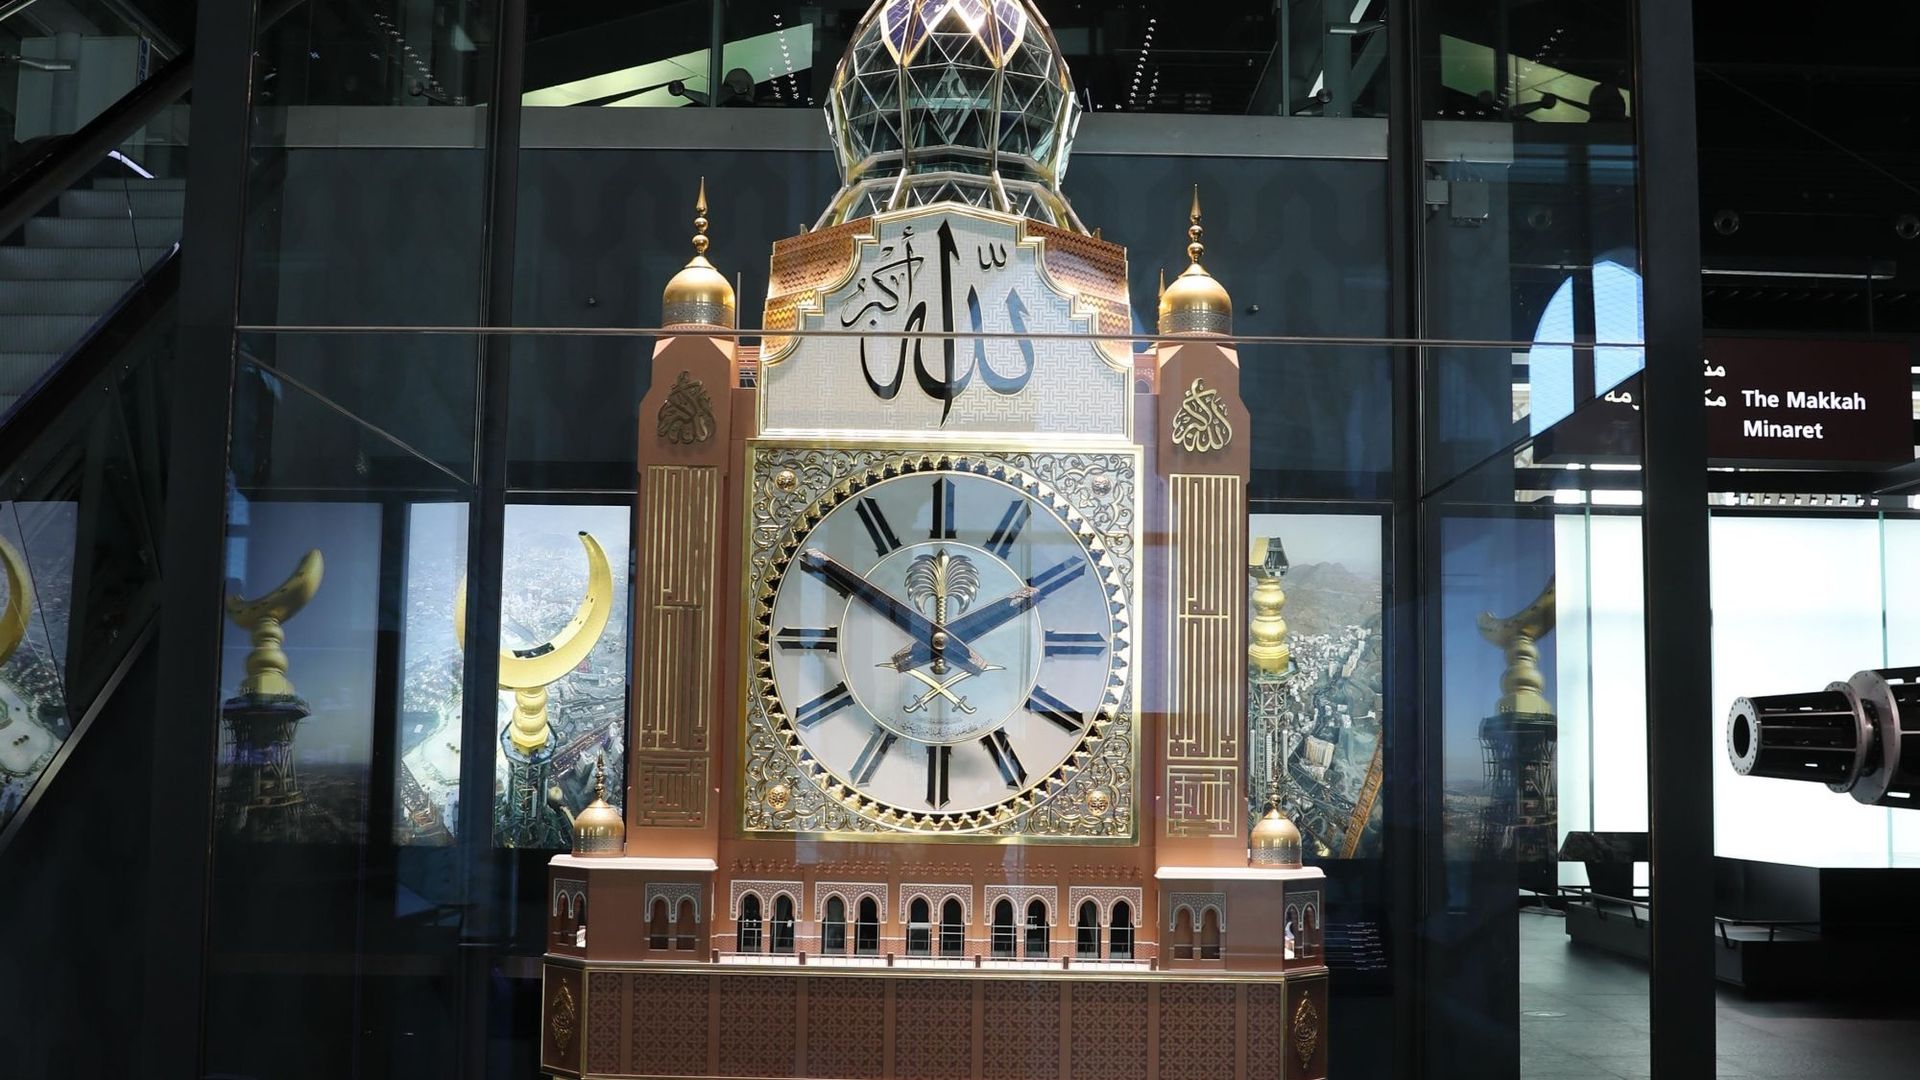 Une réplique de l'horloge de La Mecque située dans le Musée de la Tour de l'Horloge dans la ville sainte saoudienne